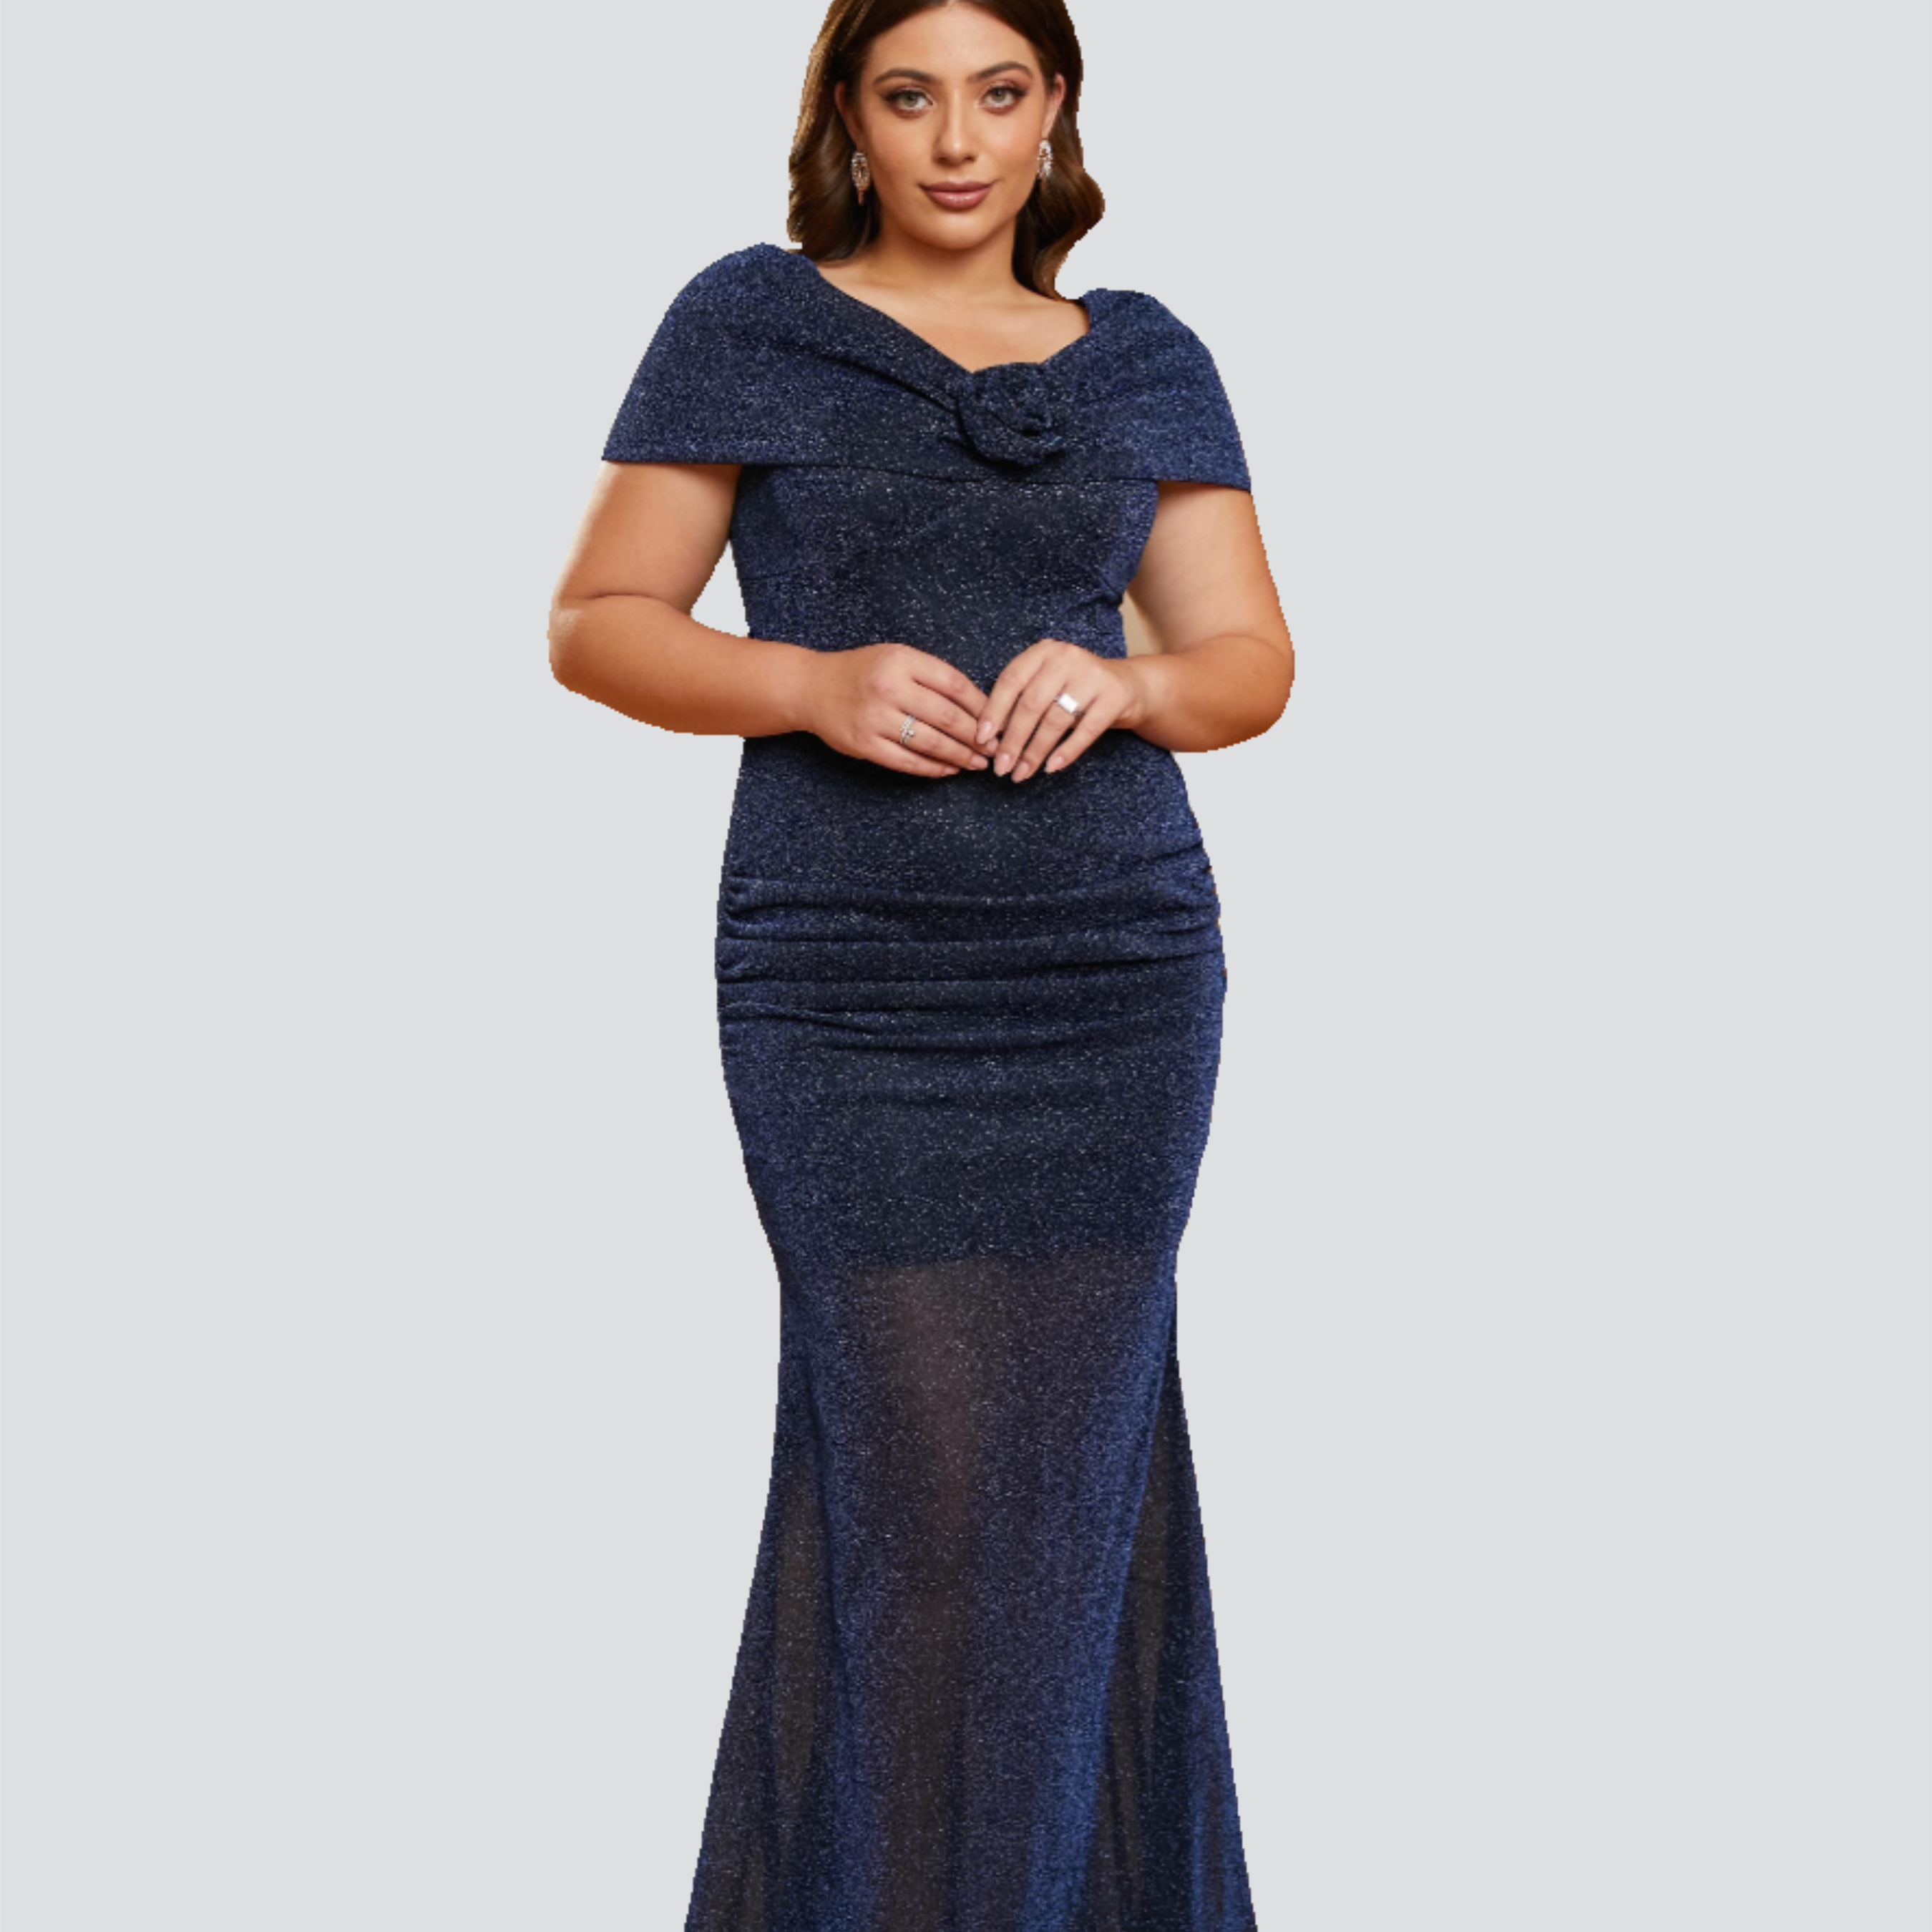 Plus Size Appliqued Mermaid Blue Sequin Dress